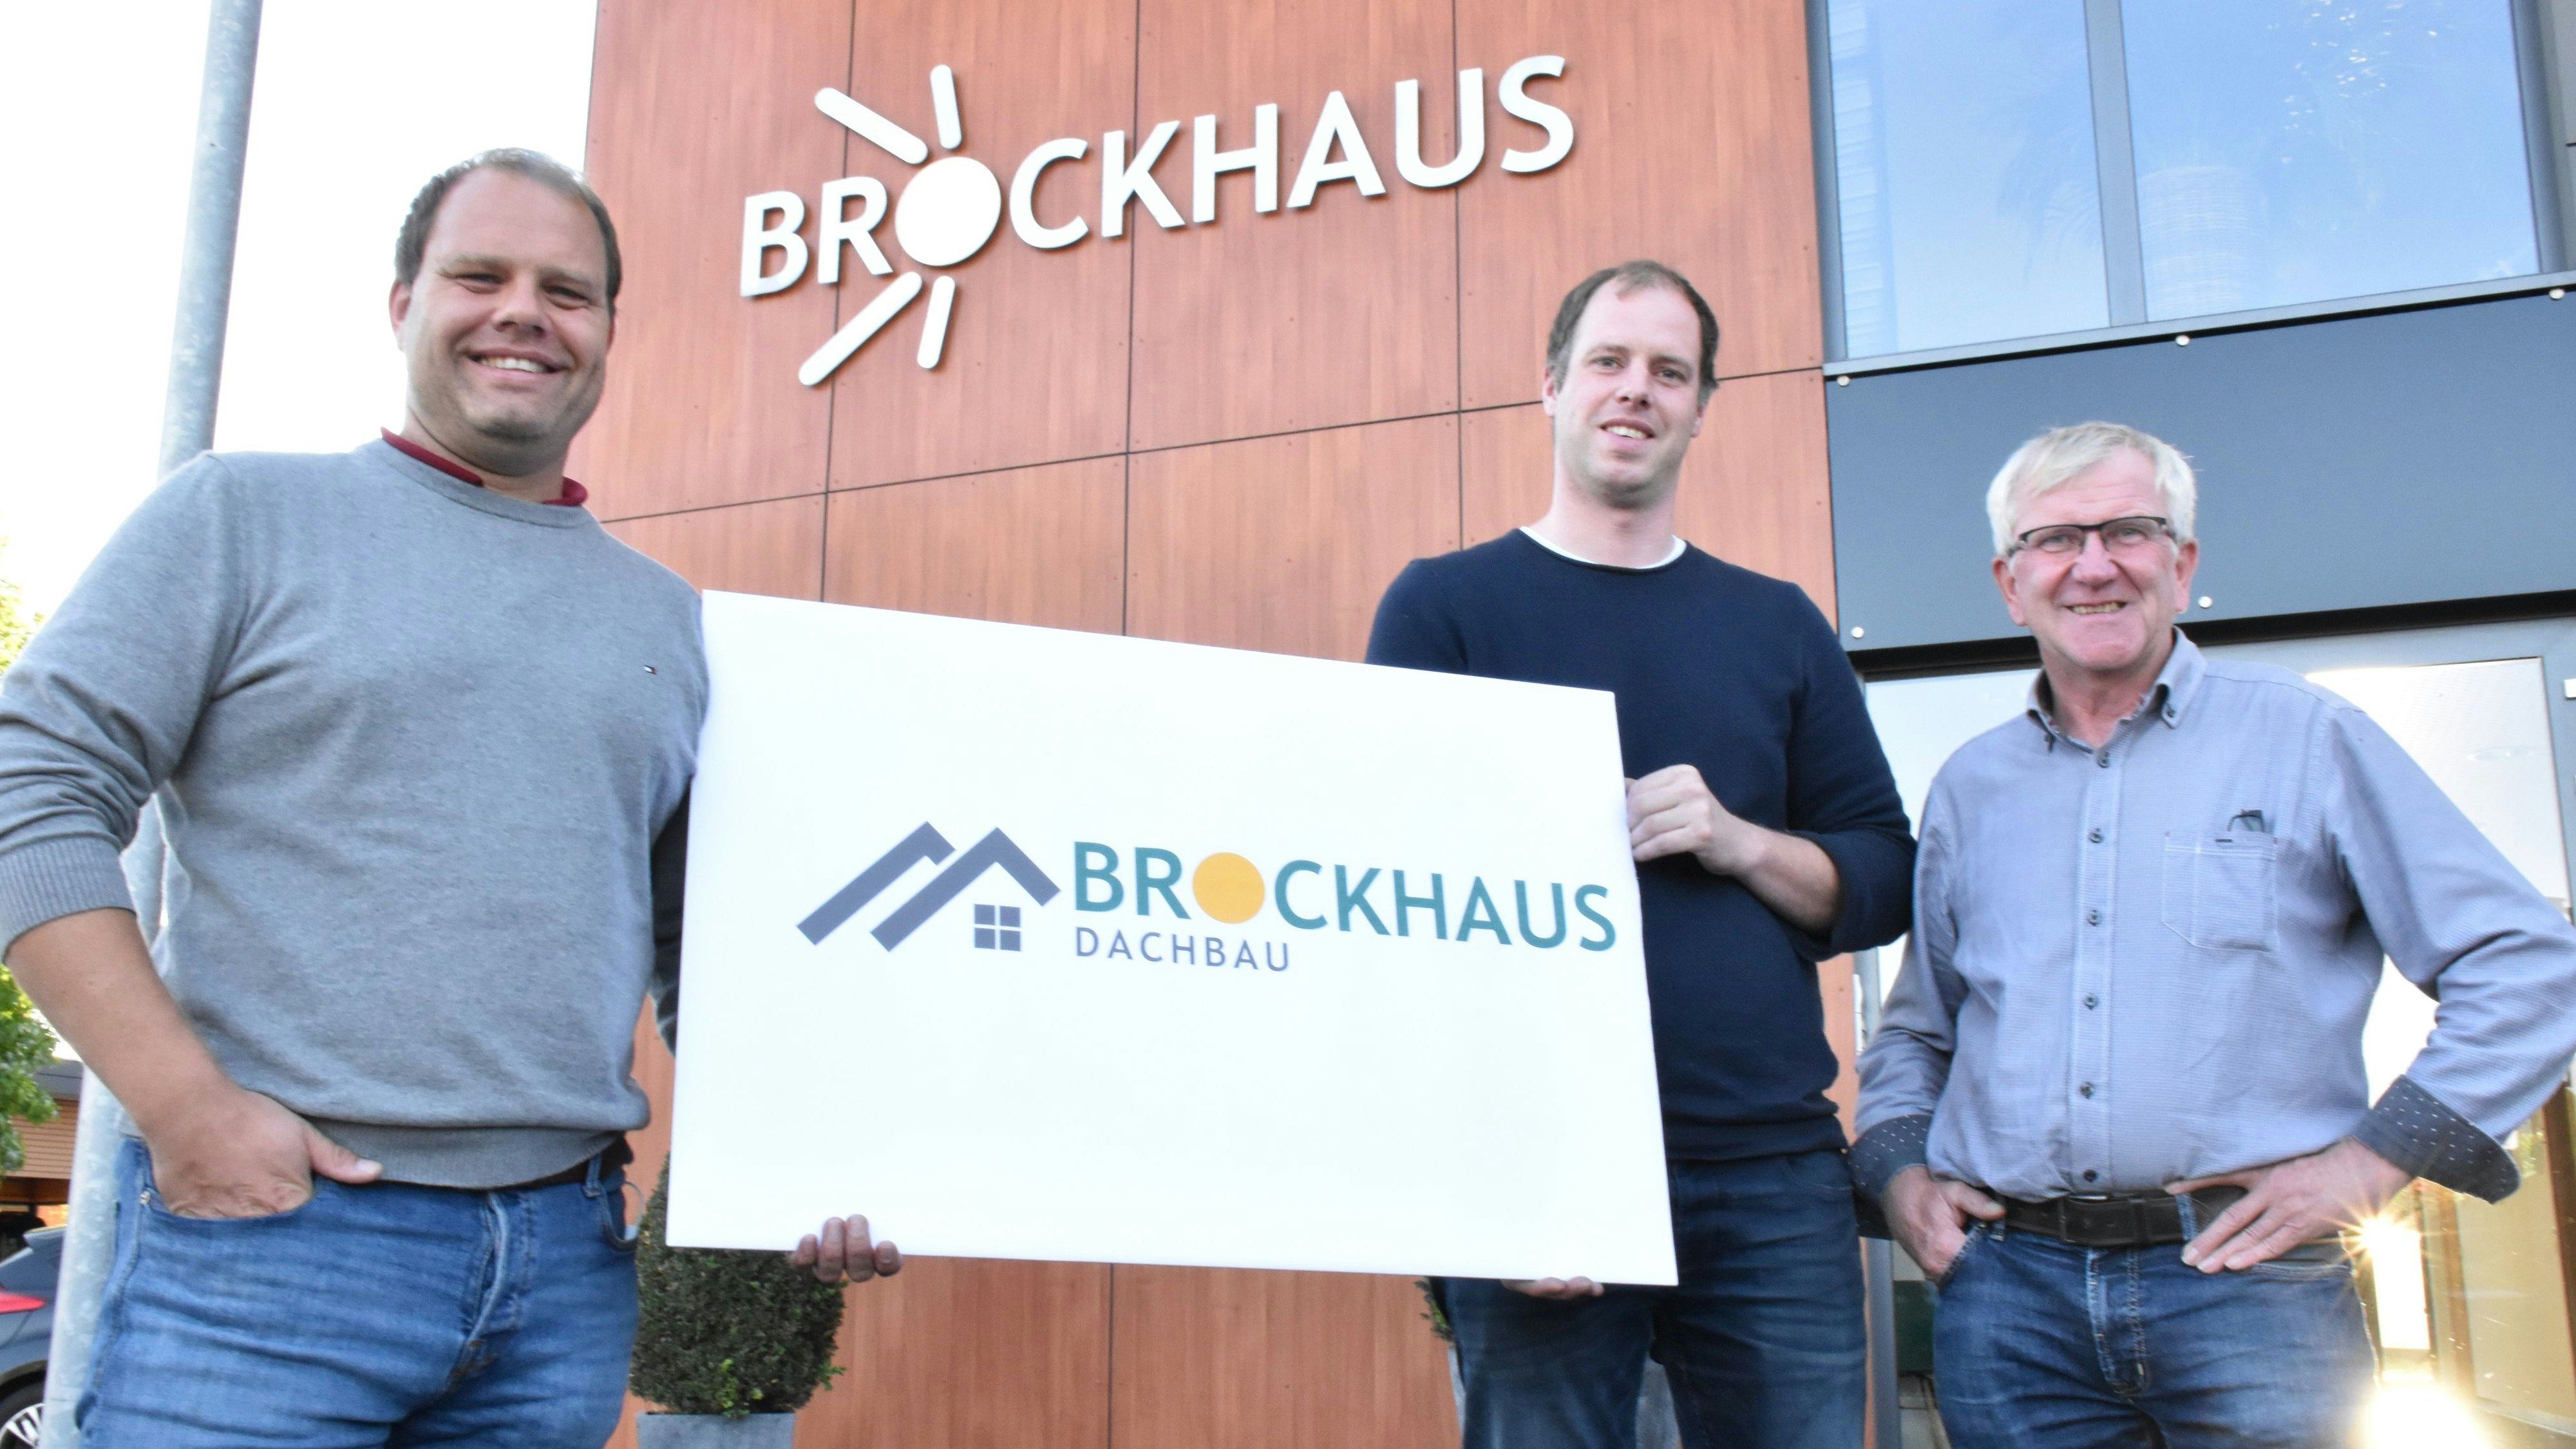 Die am 1. Januar startende, neu gegründete Brockhaus Dachbau GmbH übernimmt 5 Ruholl-Mitarbeiter. Eine gute Lösung, finden (von links) André Brockhaus, Jan Grever und Werner Ruholl. Foto: Klöker